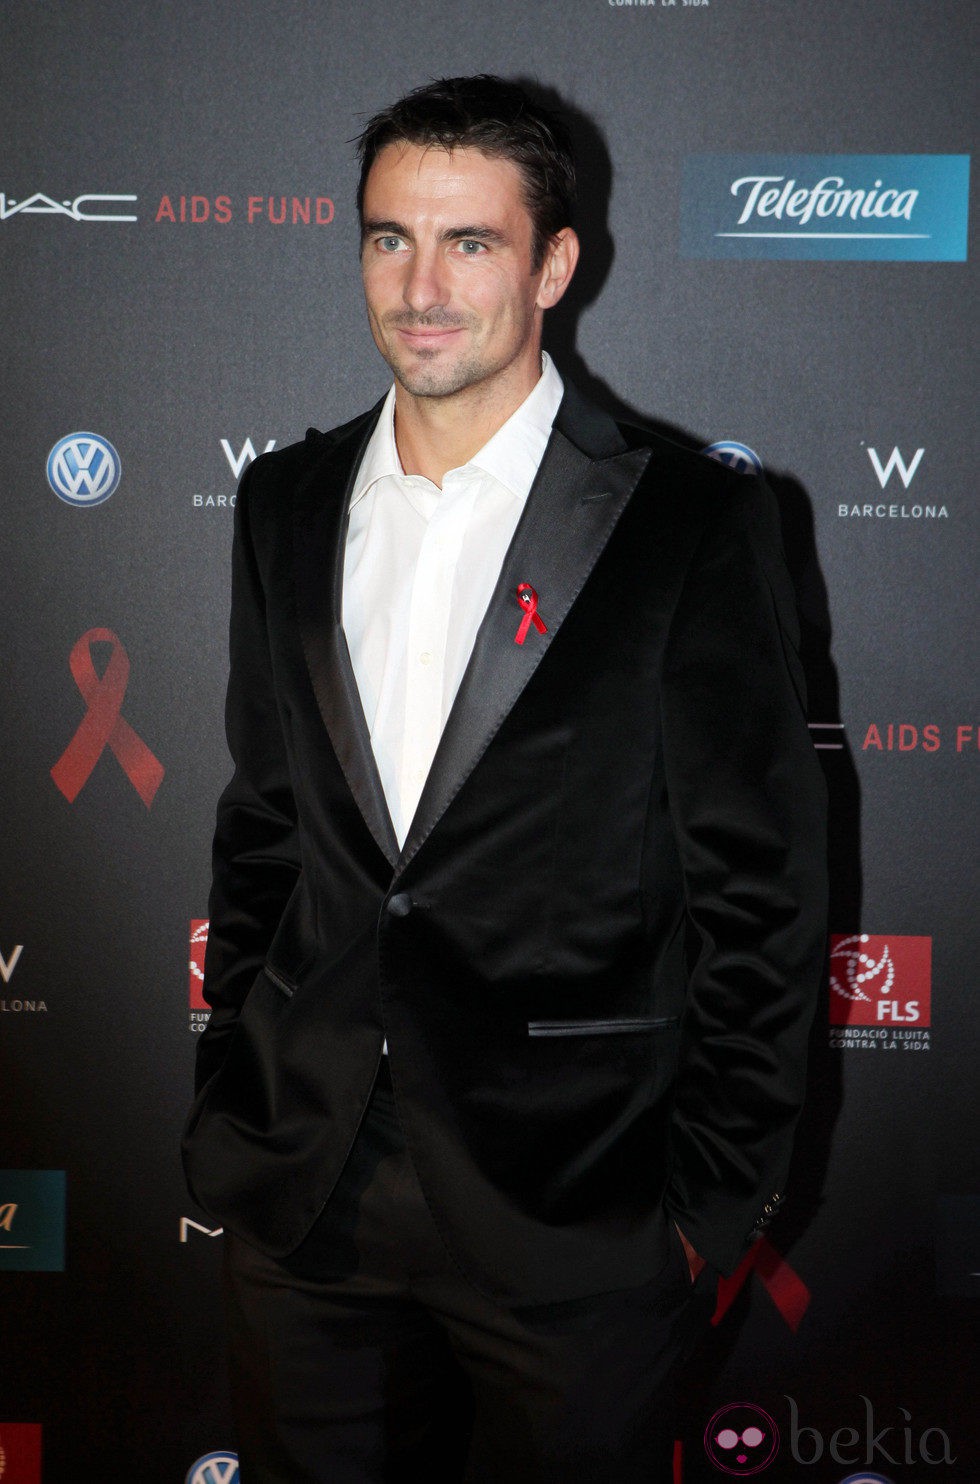 Tommy Robredo en la gala de la Fundación Lluita contra el sida